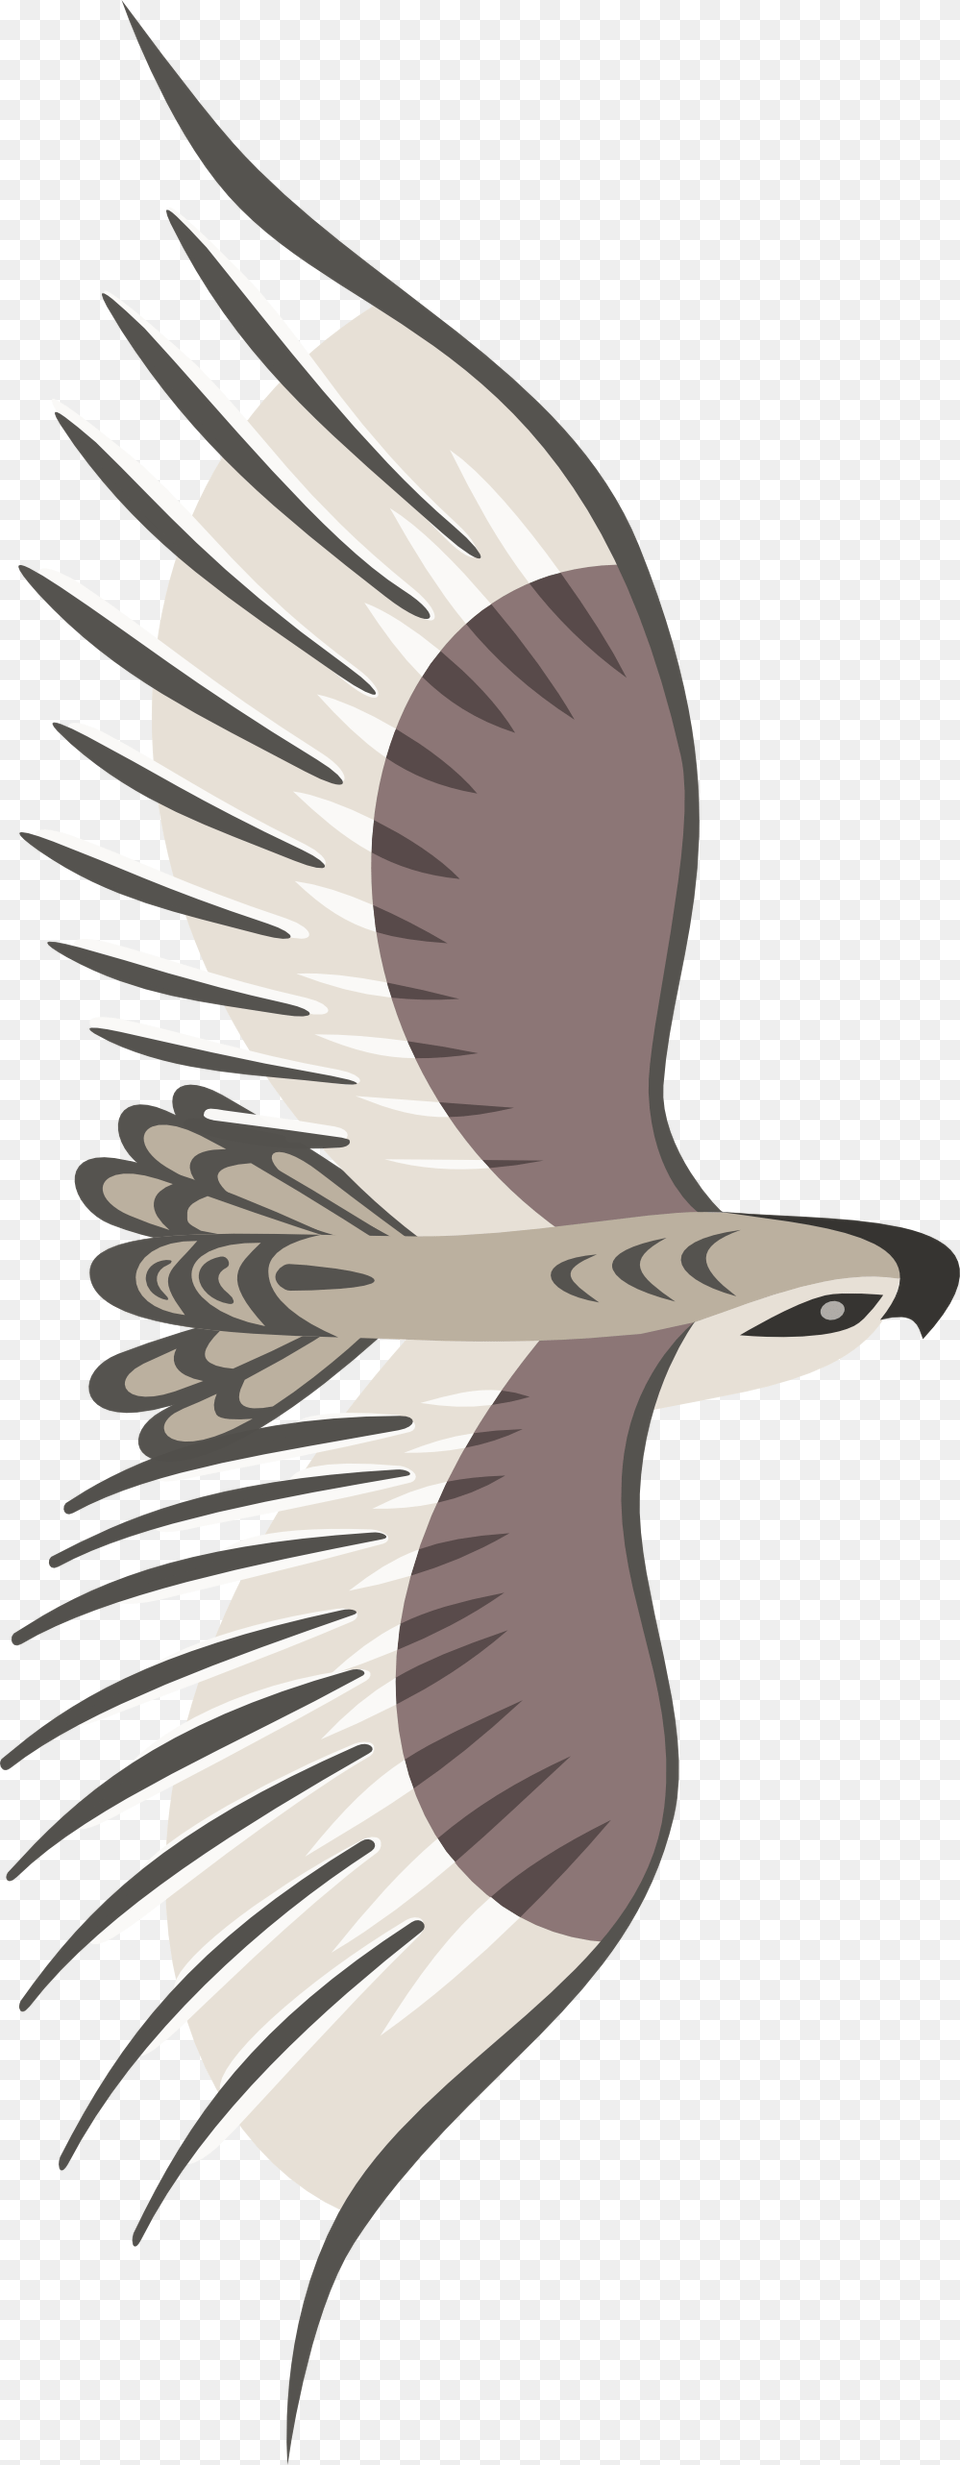 Bird Top View, Animal, Flying, Kite Bird, Accipiter Png Image